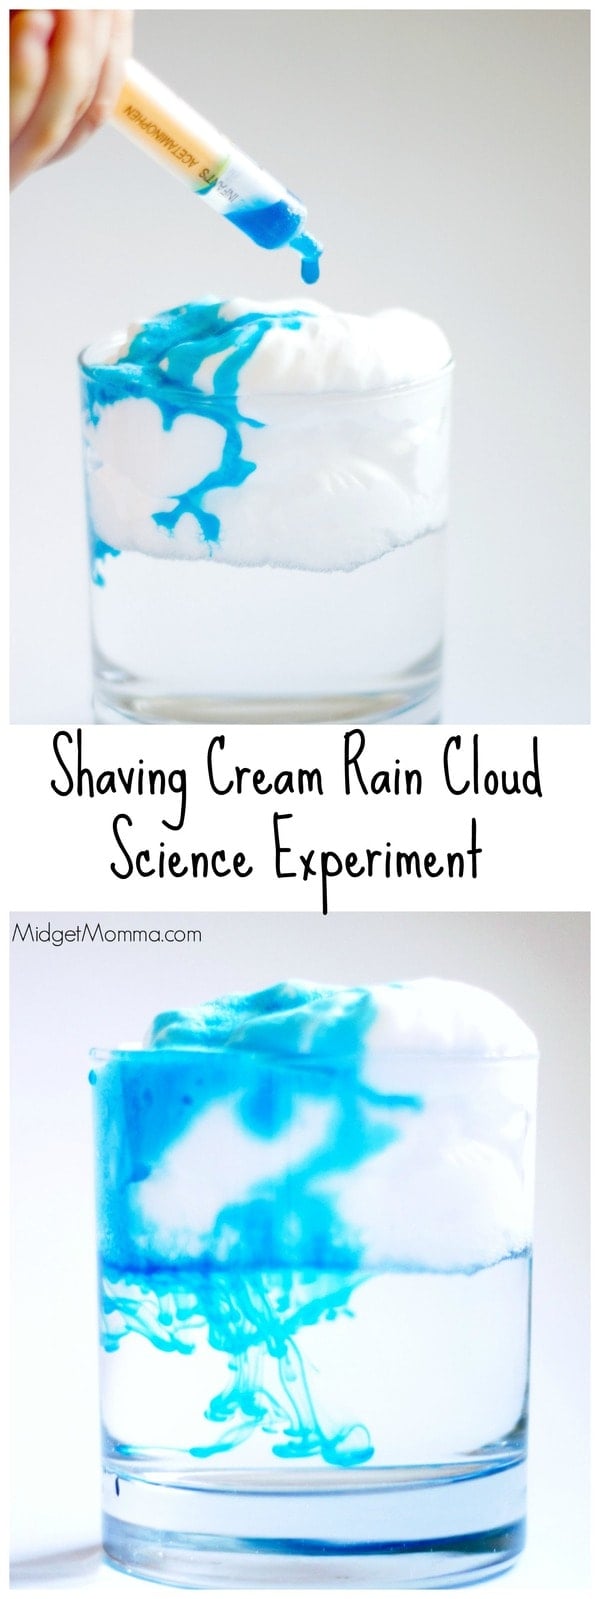 Shaving Cream Rain Cloud Science Experiment • MidgetMomma